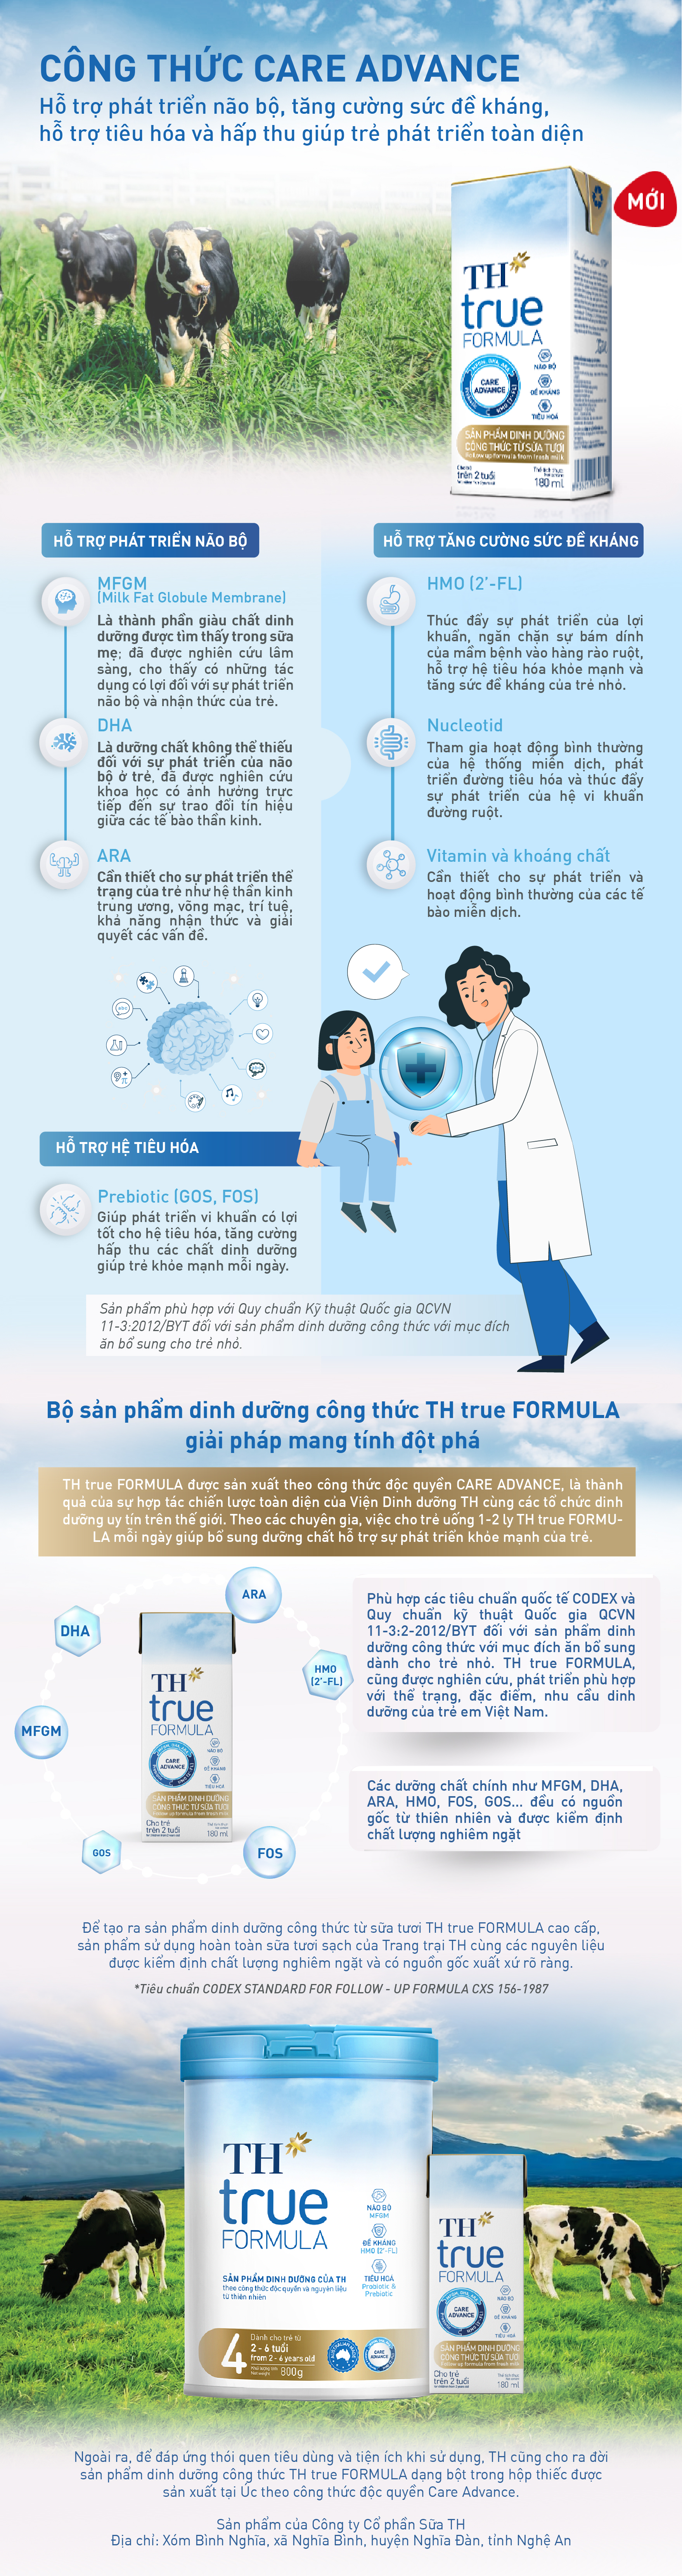 TH true FORMULA và bộ công thức dinh dưỡng đột phá, ‘may đo’ cho trẻ em Việt Nam- Ảnh 1.